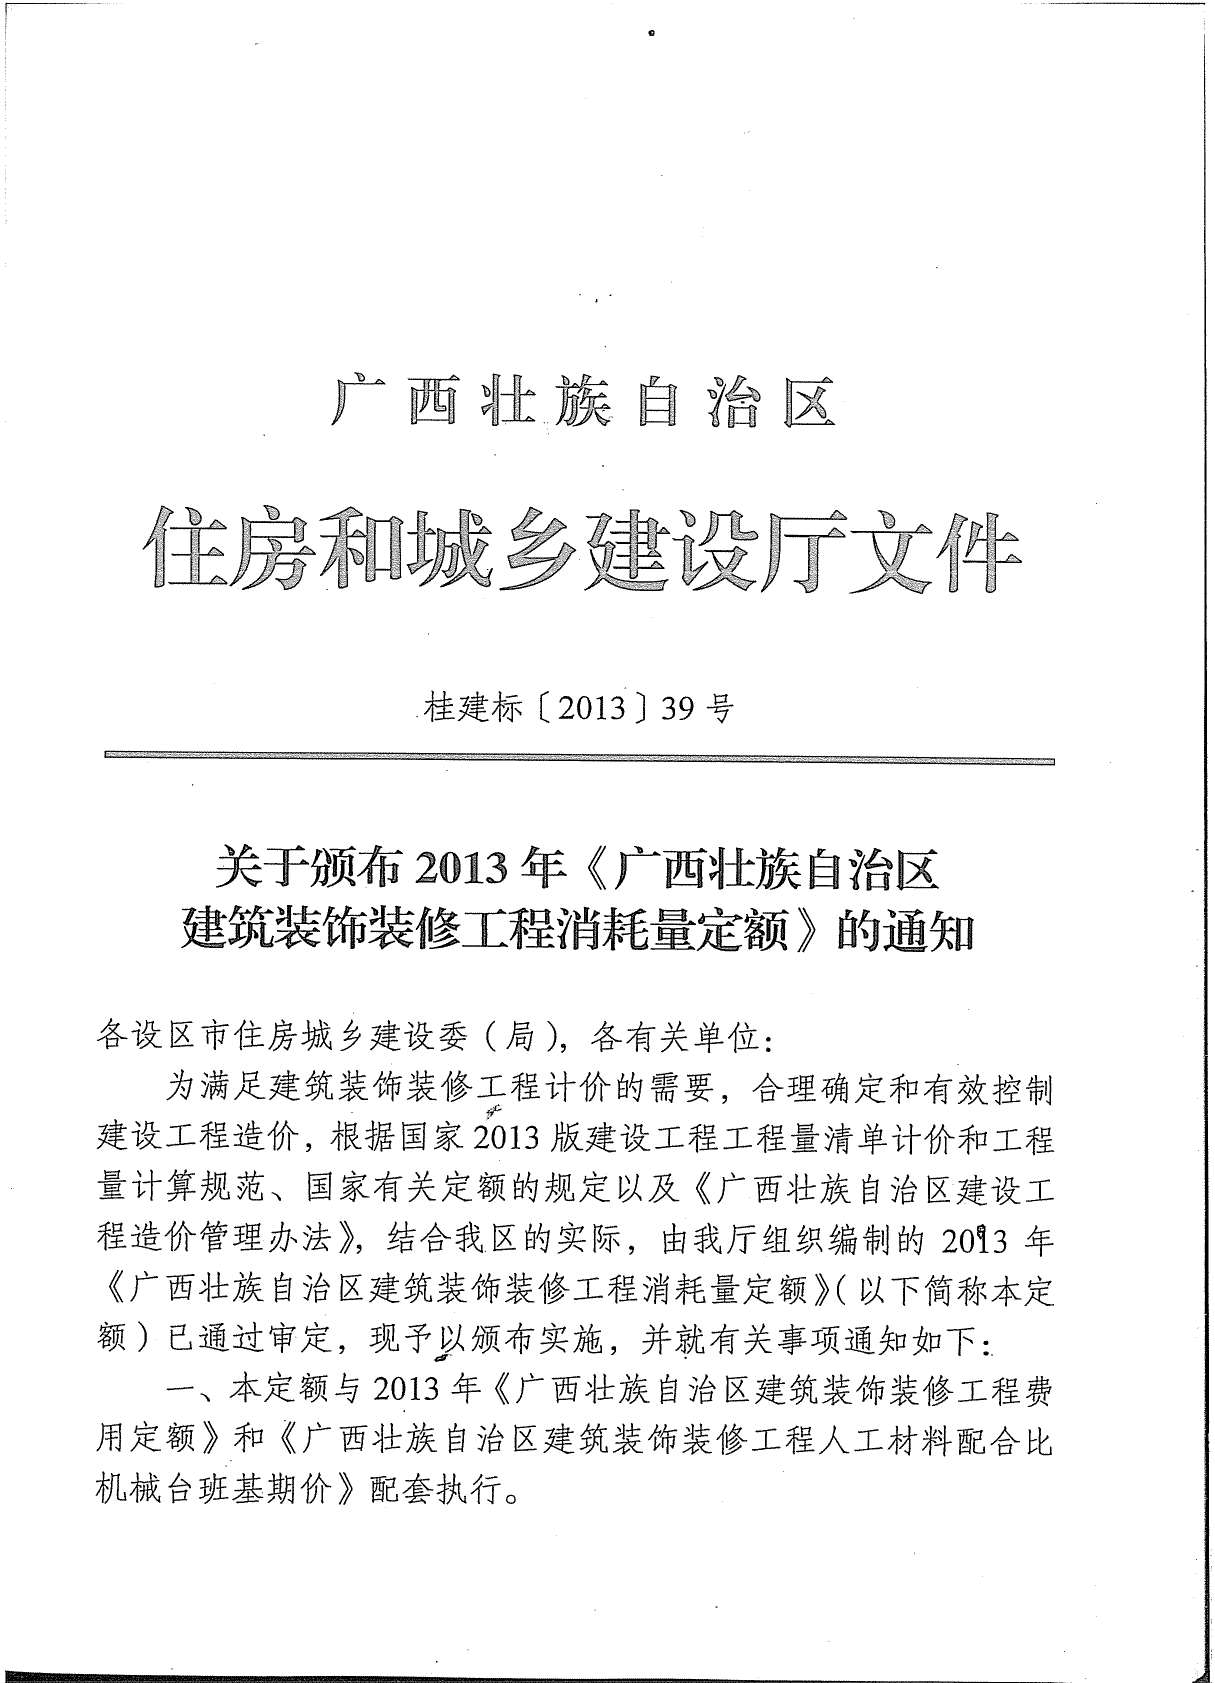 2013广西建筑装饰工程消耗量定额(上册1)